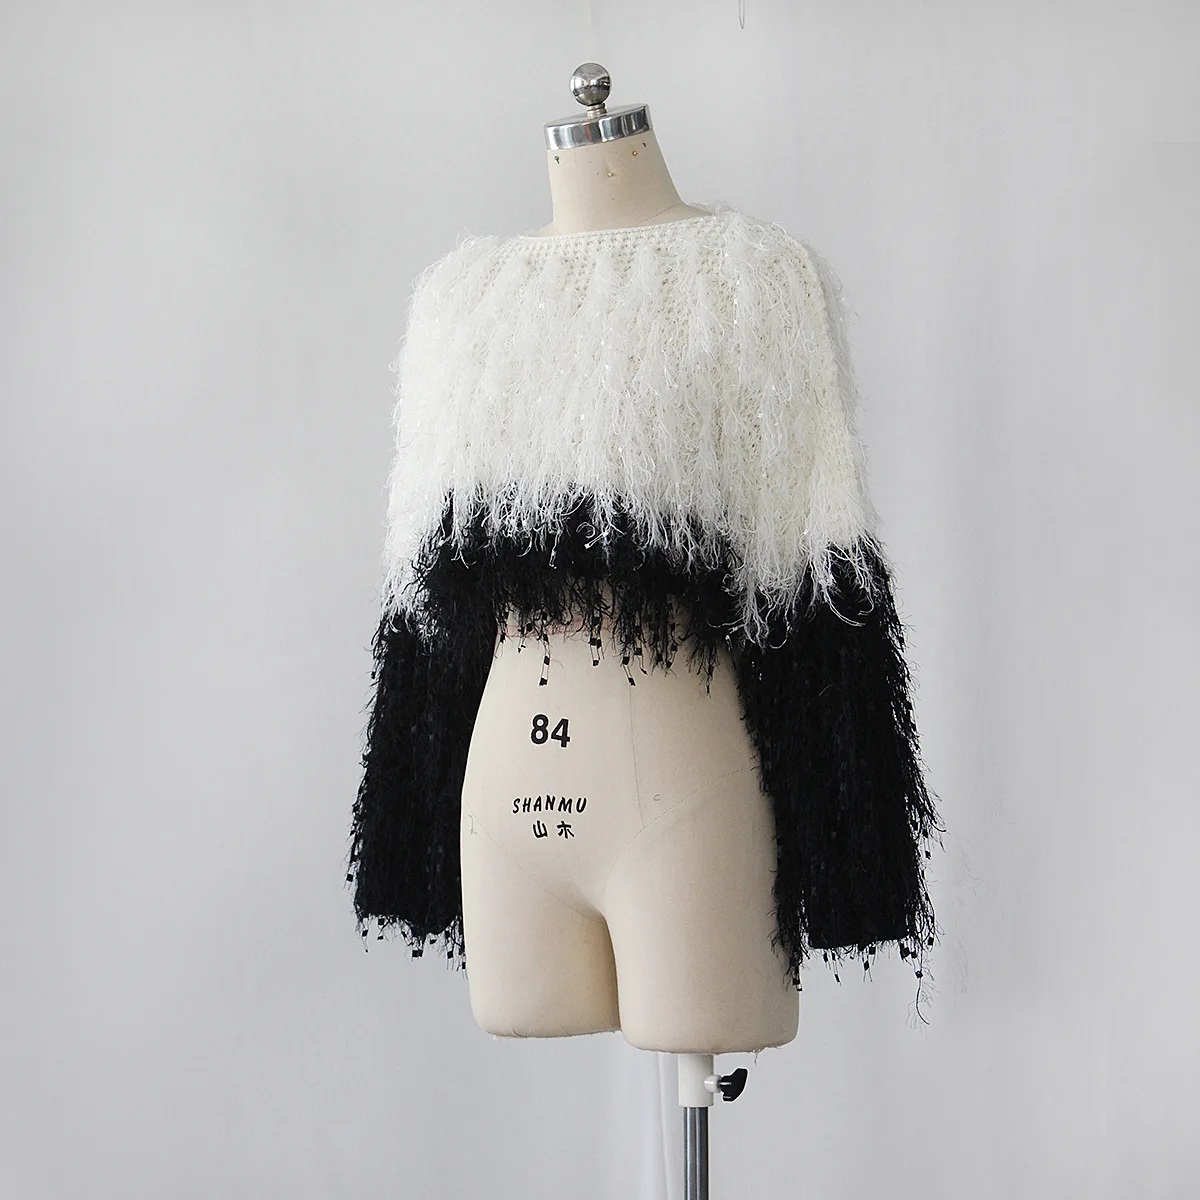 BOOFEENAA осень женская зимняя одежда укороченный свитер объемной кисточкой вязать свитер Топ свитера Мода 2019 Рождество C48-AI55